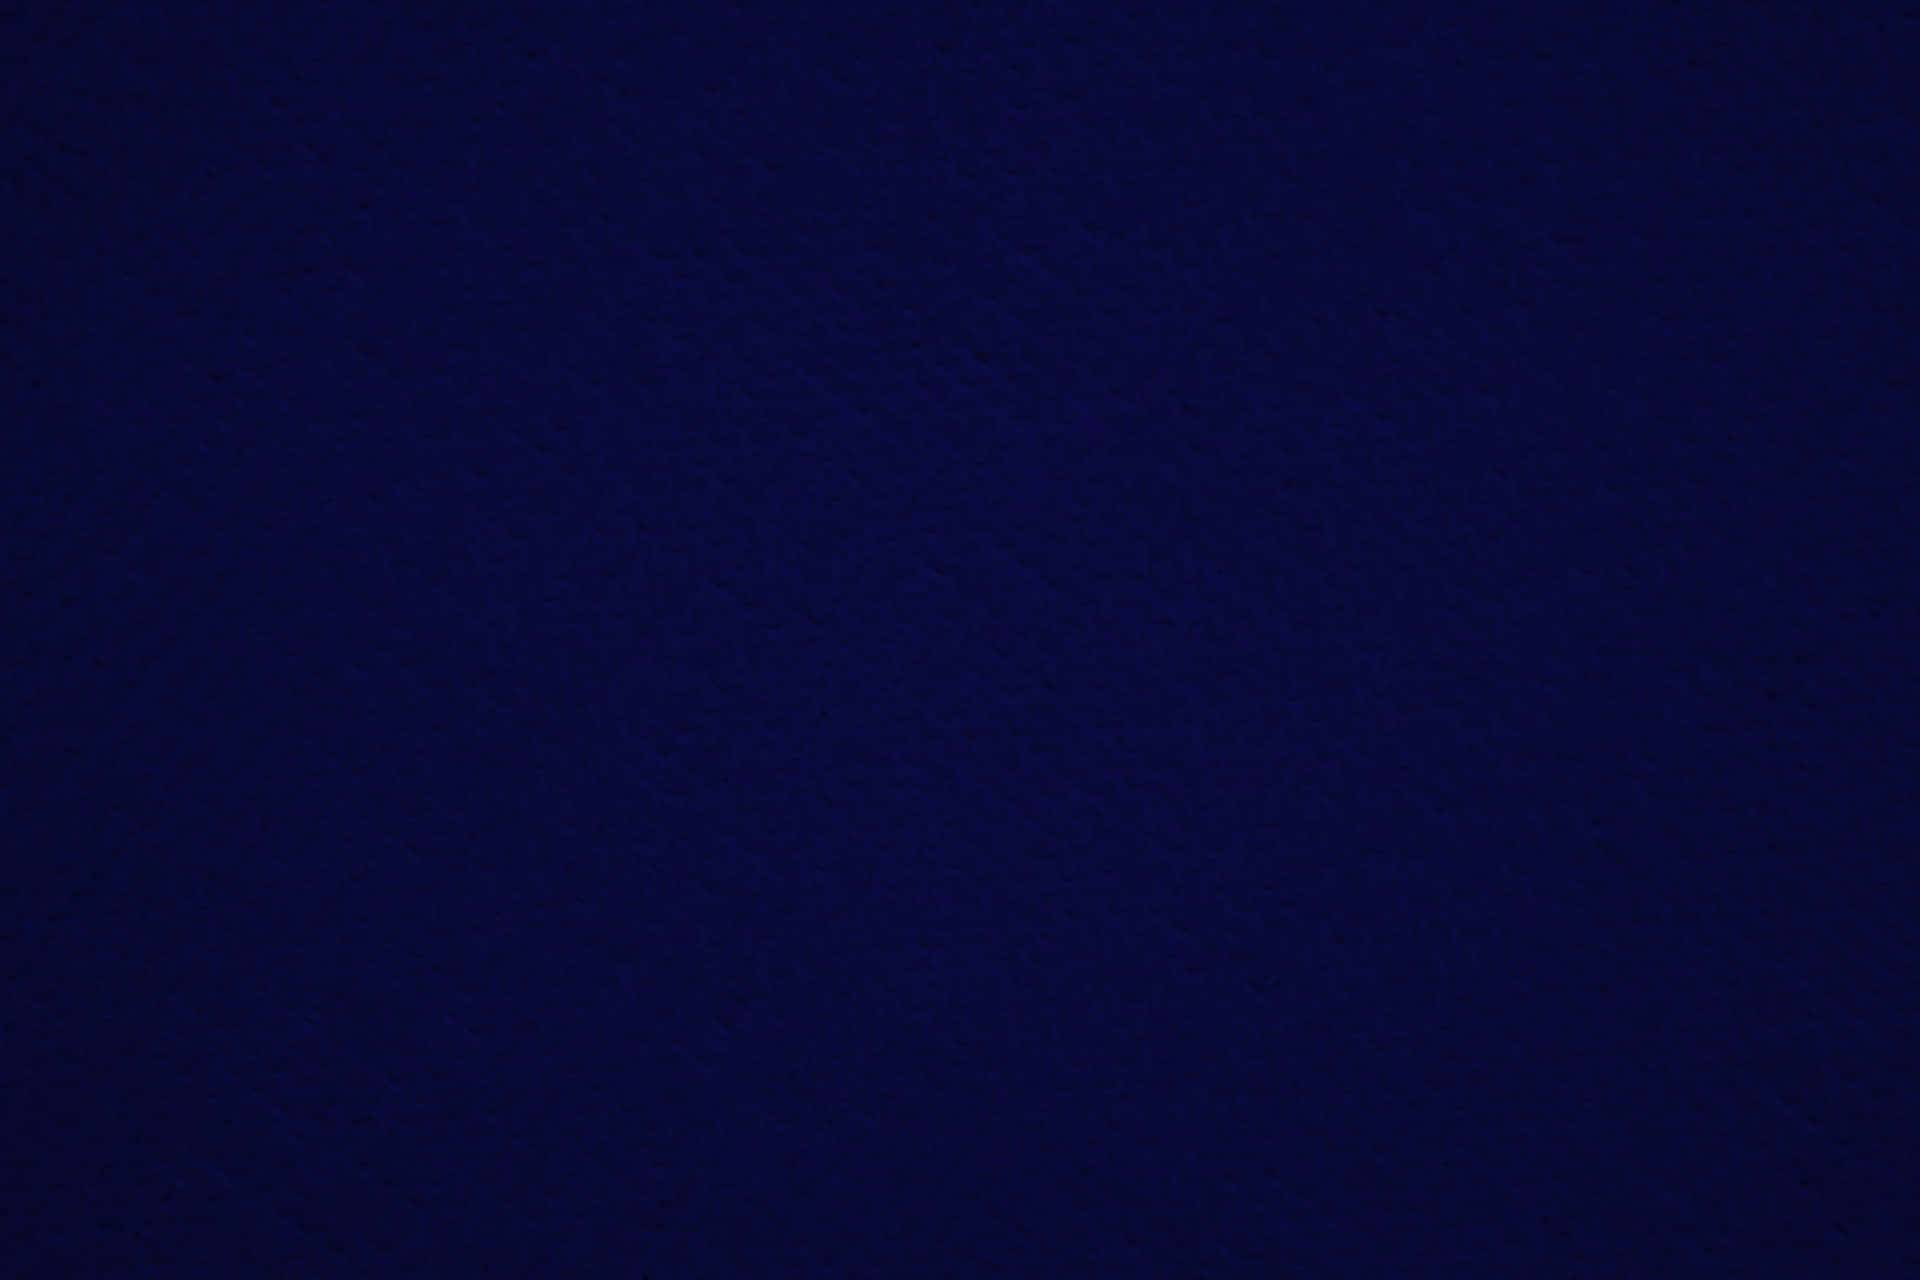 Solid Dark Navy Blue Background